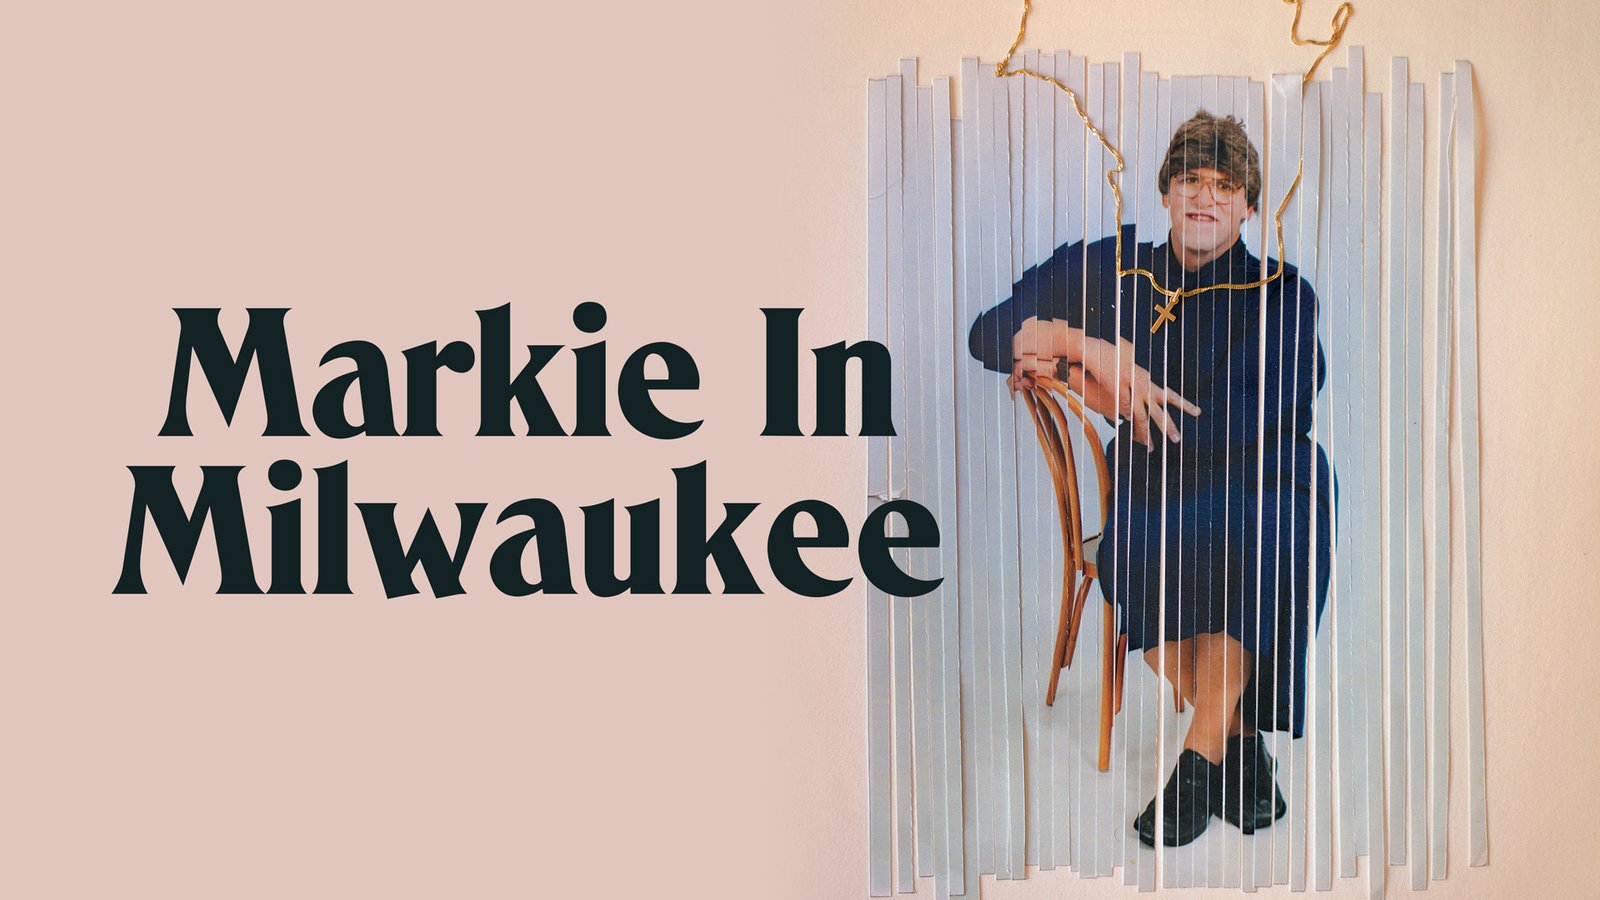 Markie in Milwaukee